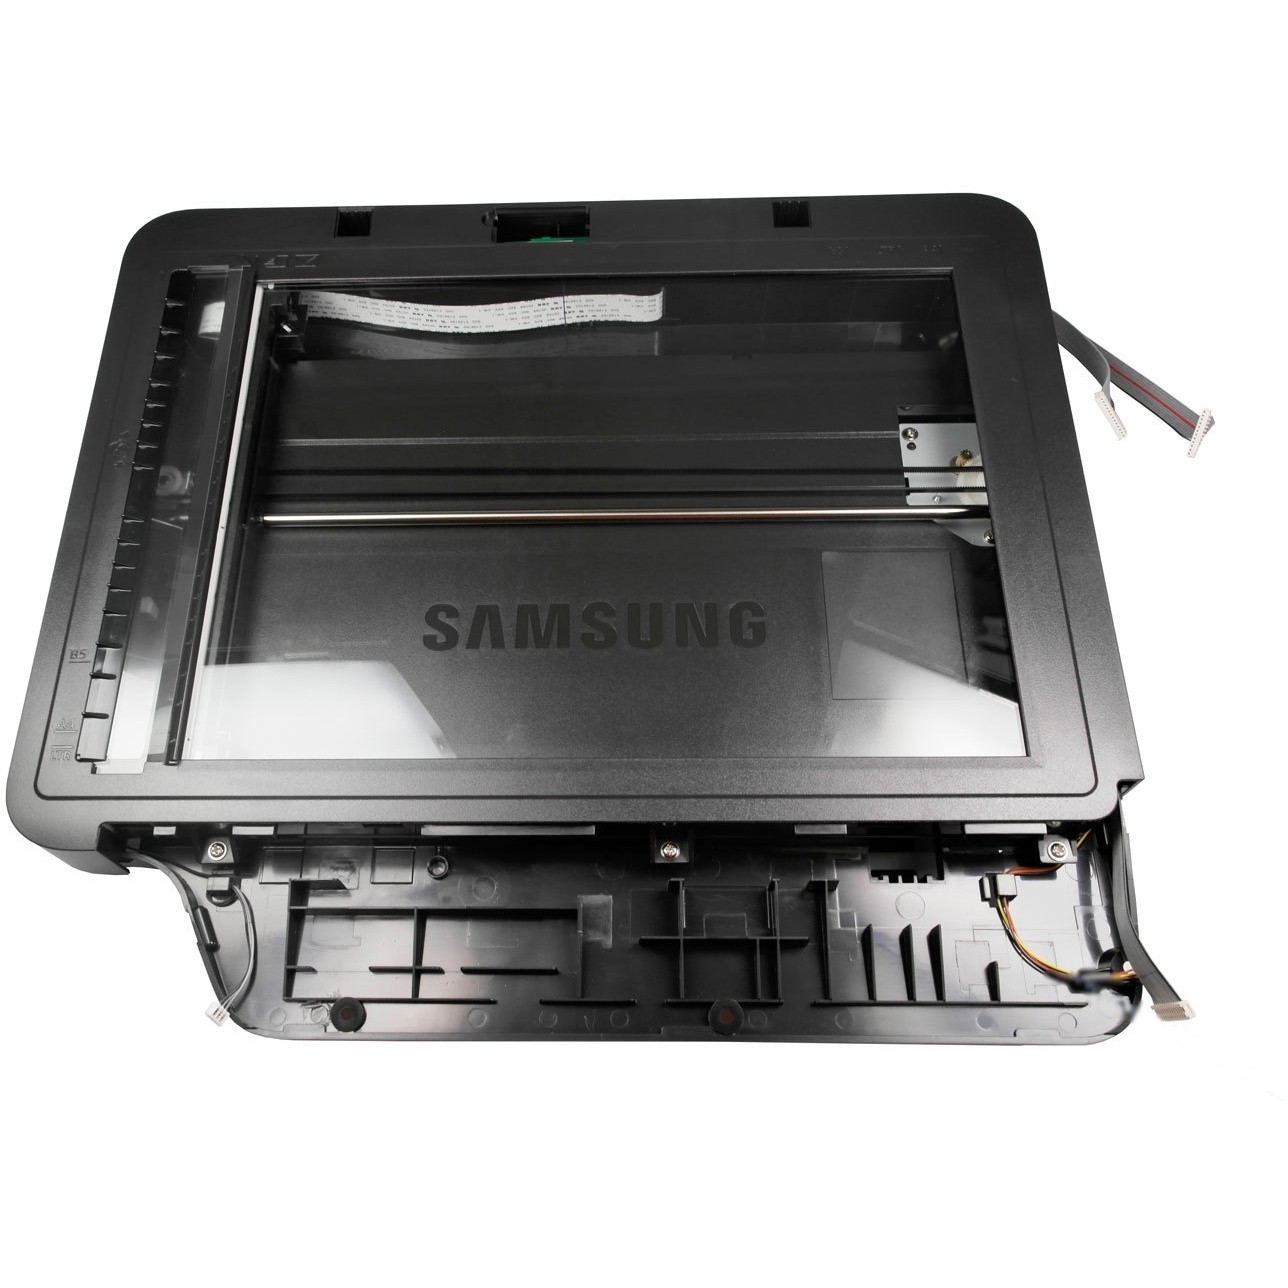 Original Samsung JC97-04070A Document Platen Scanner (JC97-04070A)